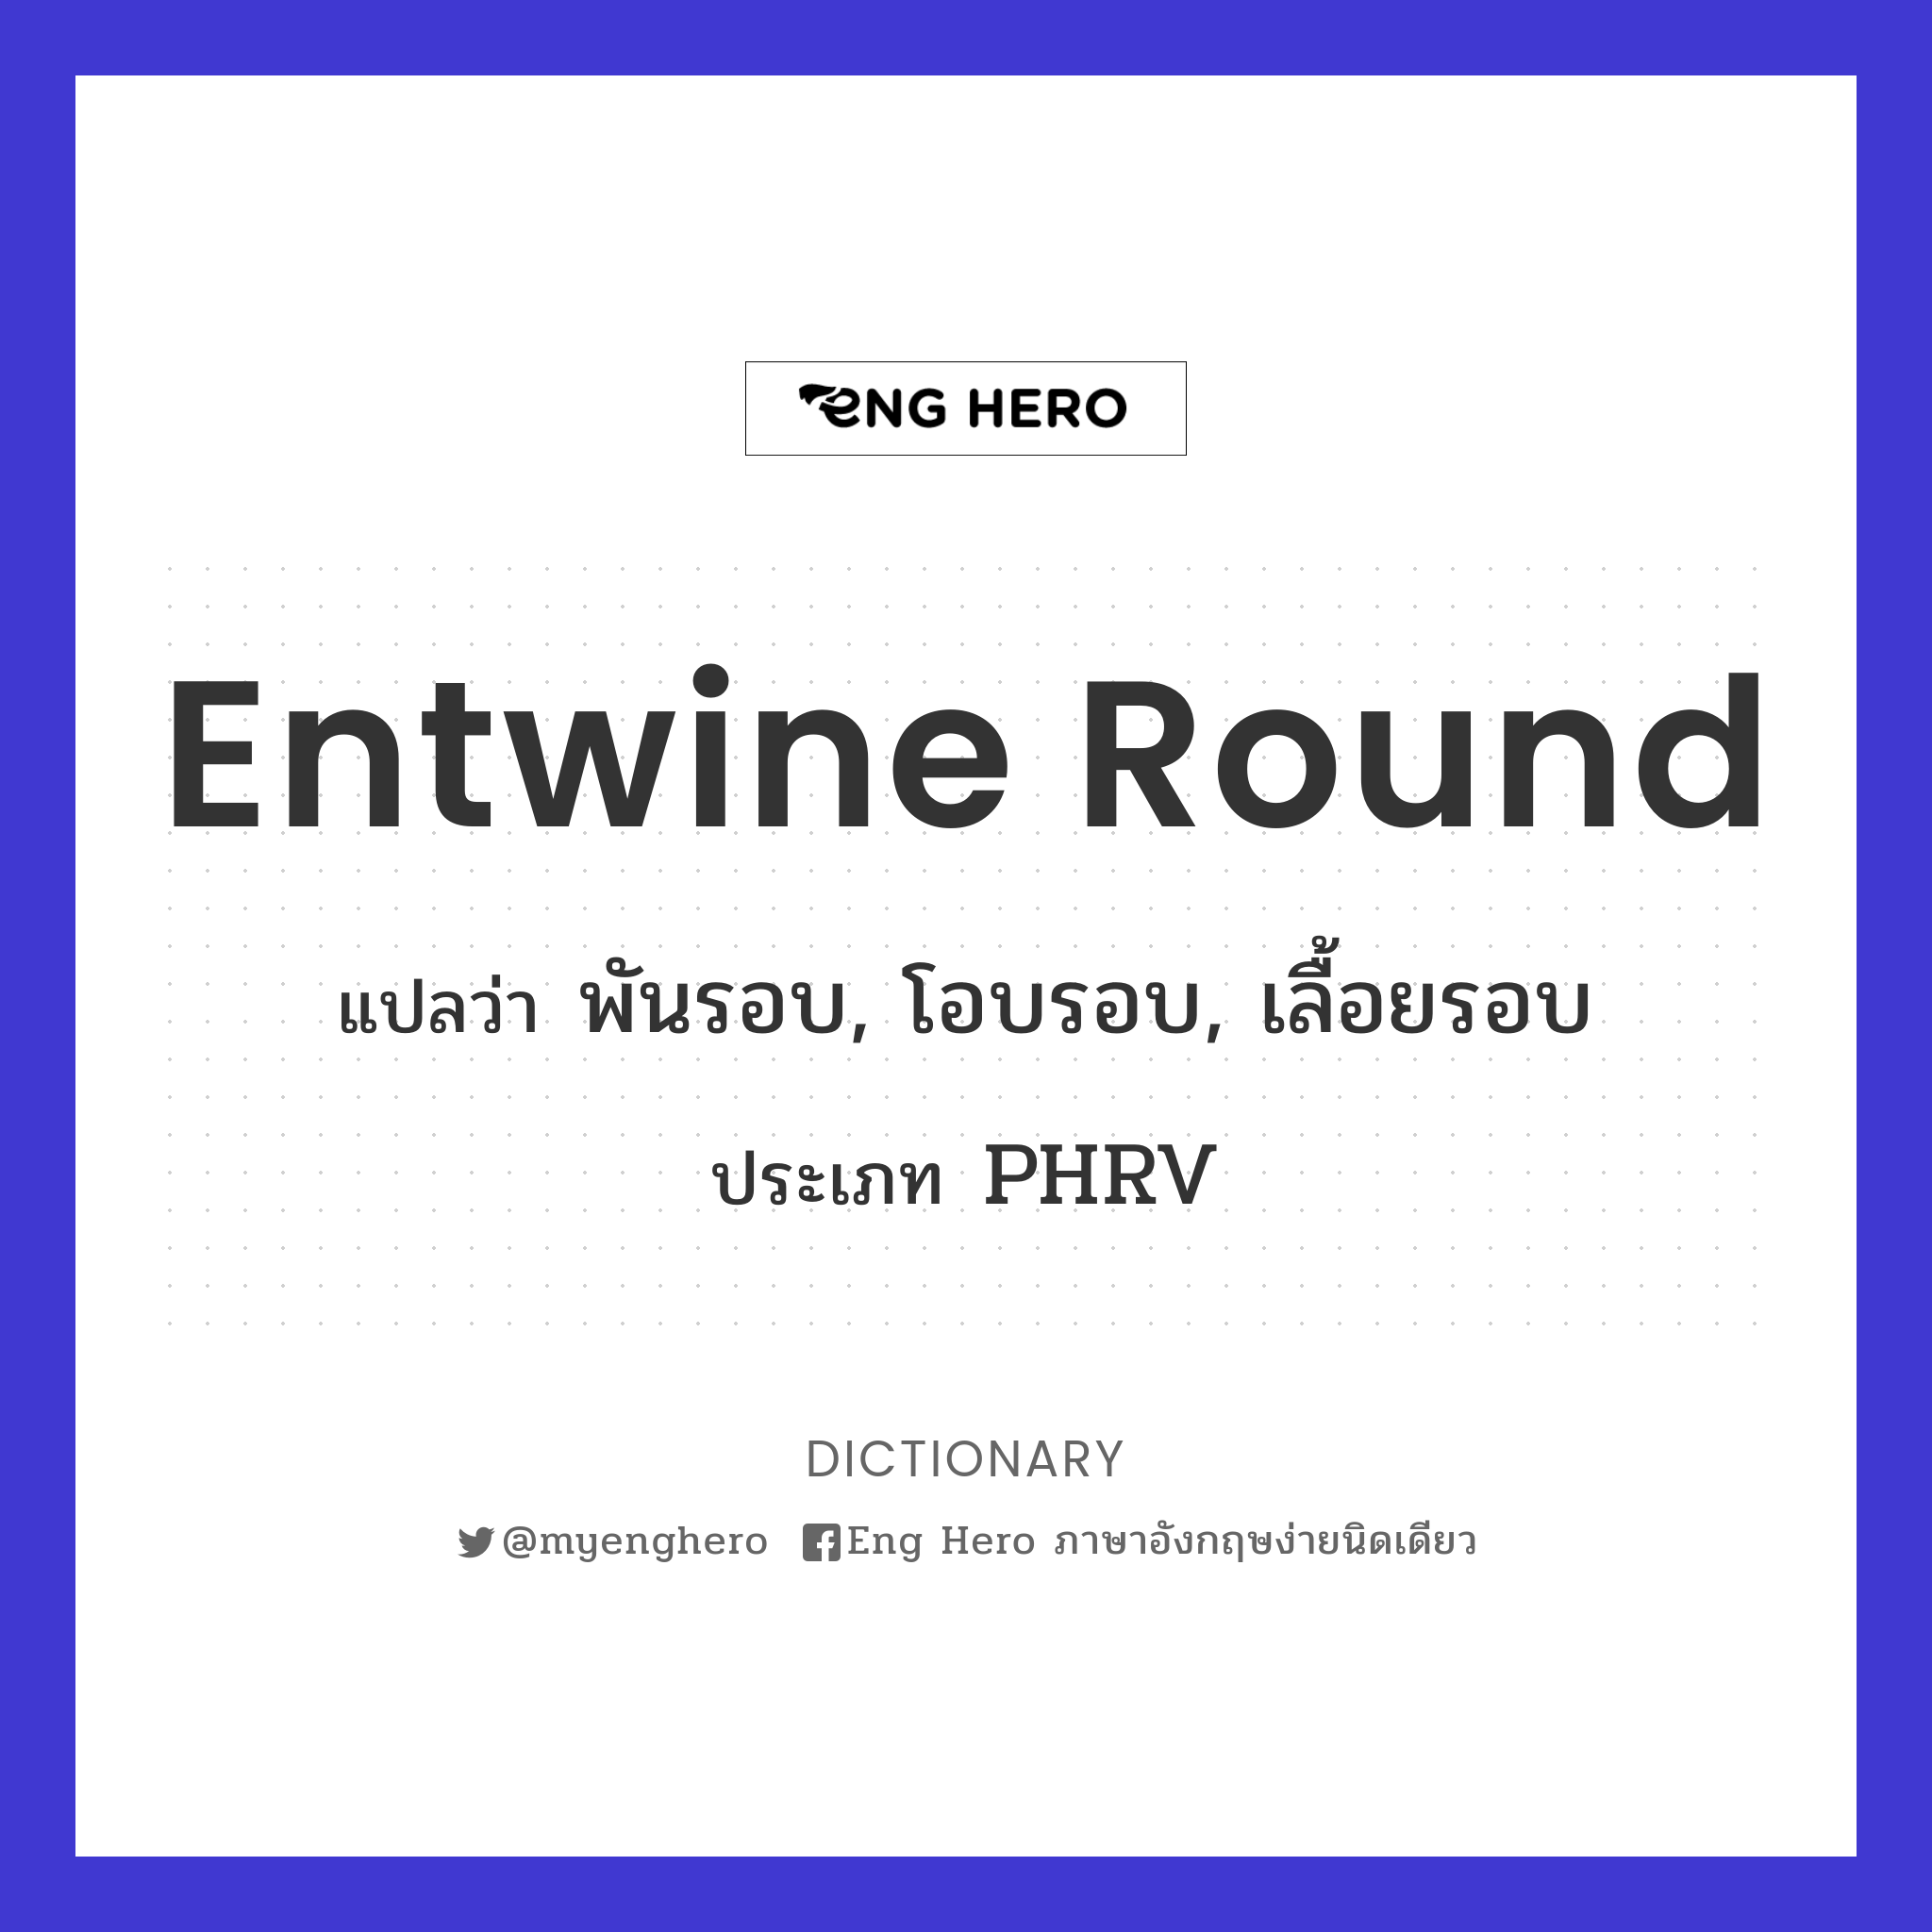 entwine round